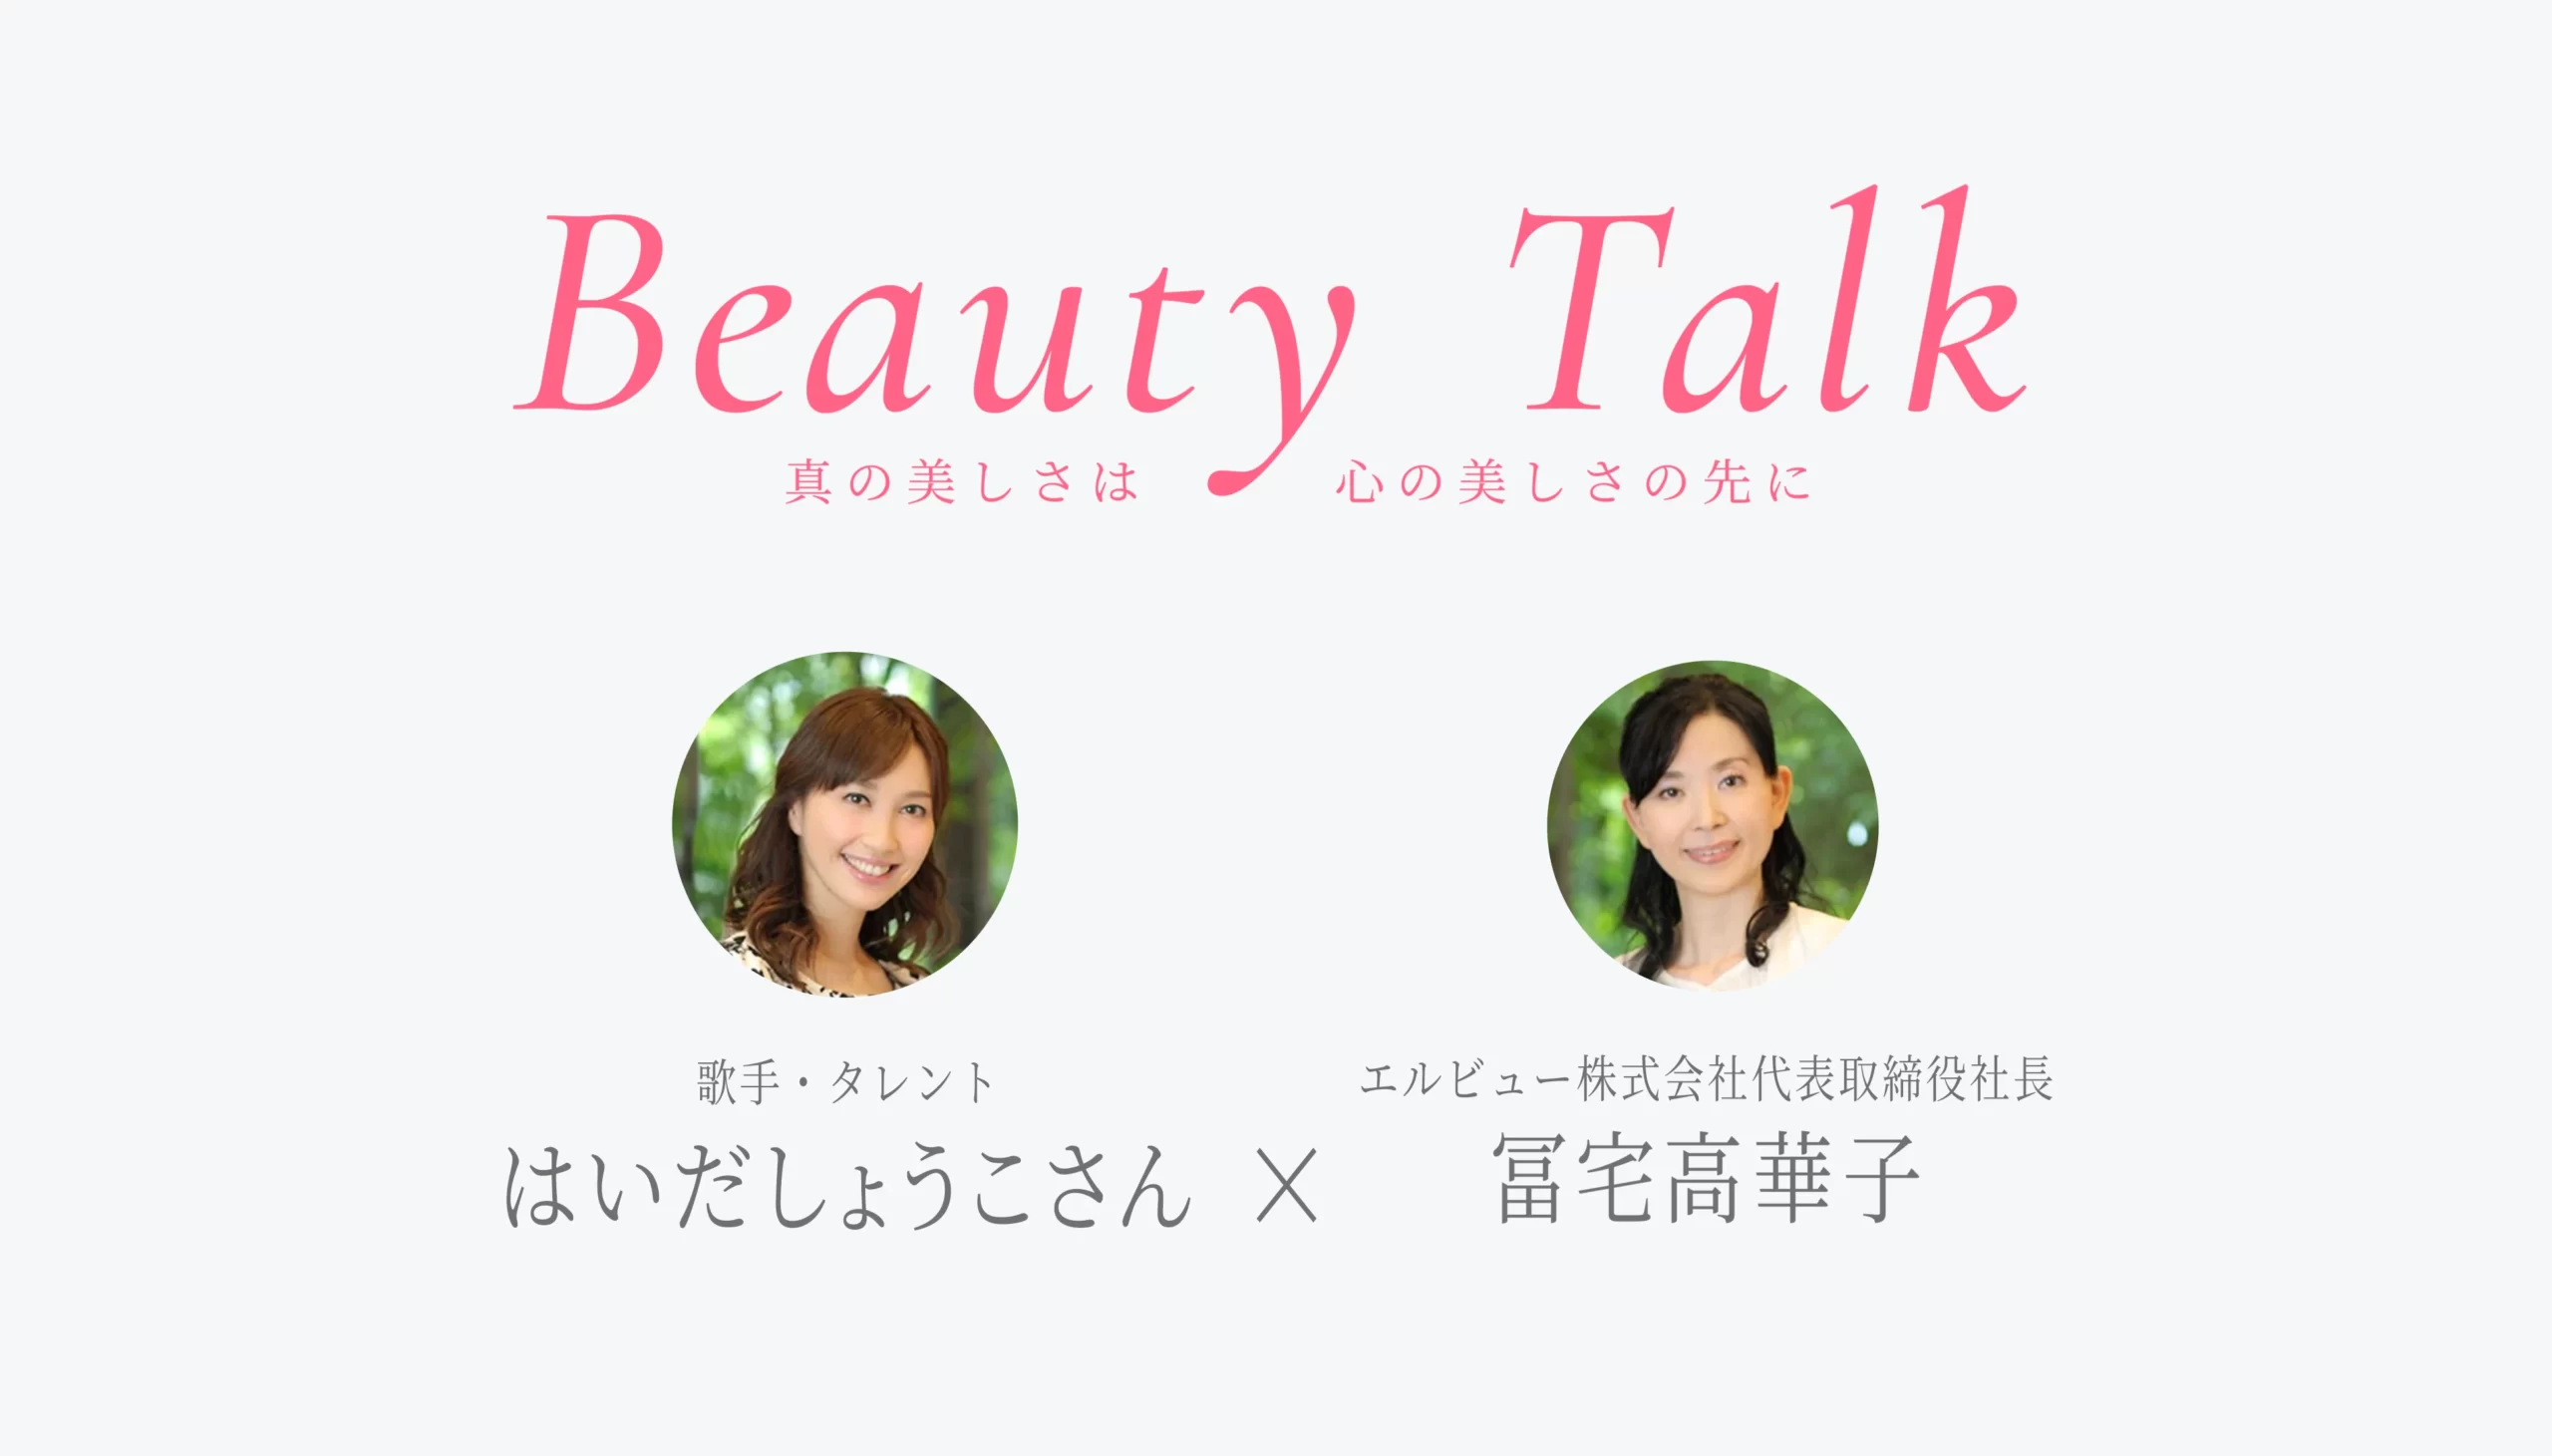 Beauty Talk Vol.33 はいだしょうこ